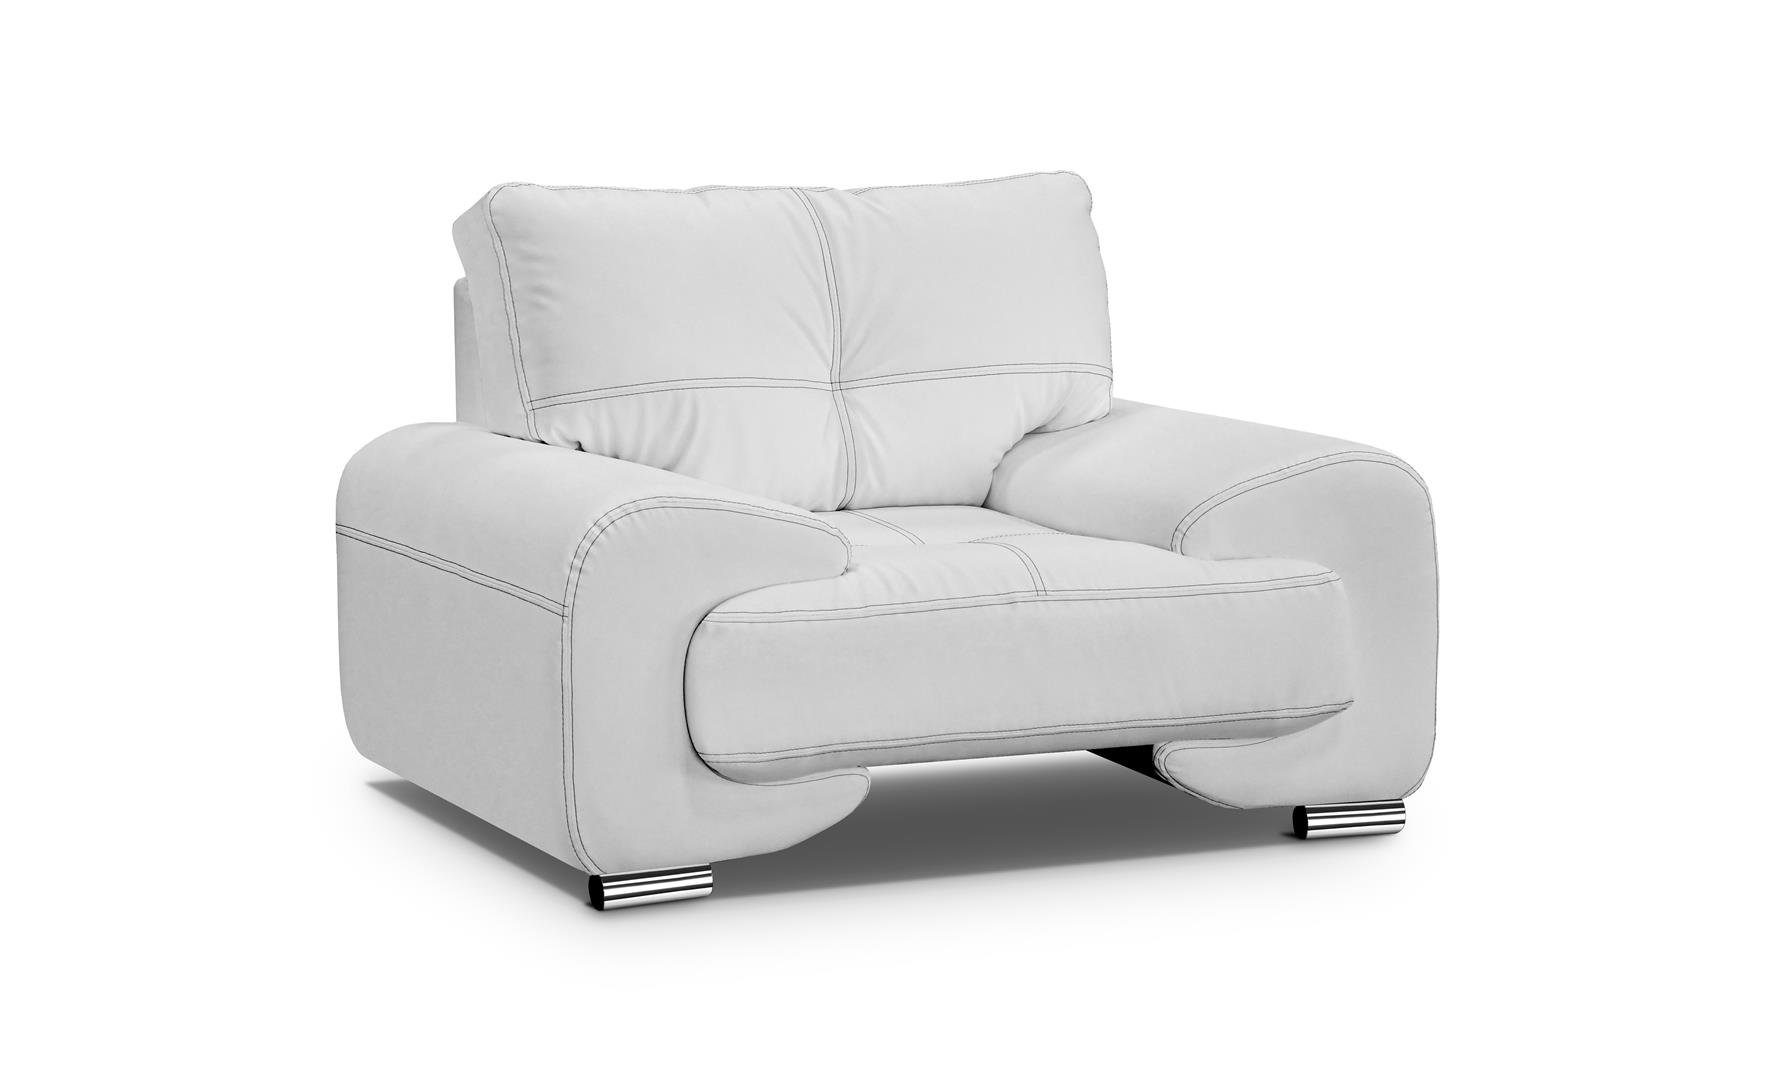 Beautysofa Relaxsessel Relaxsessel Omega Kunstleder Sessel Modern Wohnzimmersesel Weiß (dolaro 511)